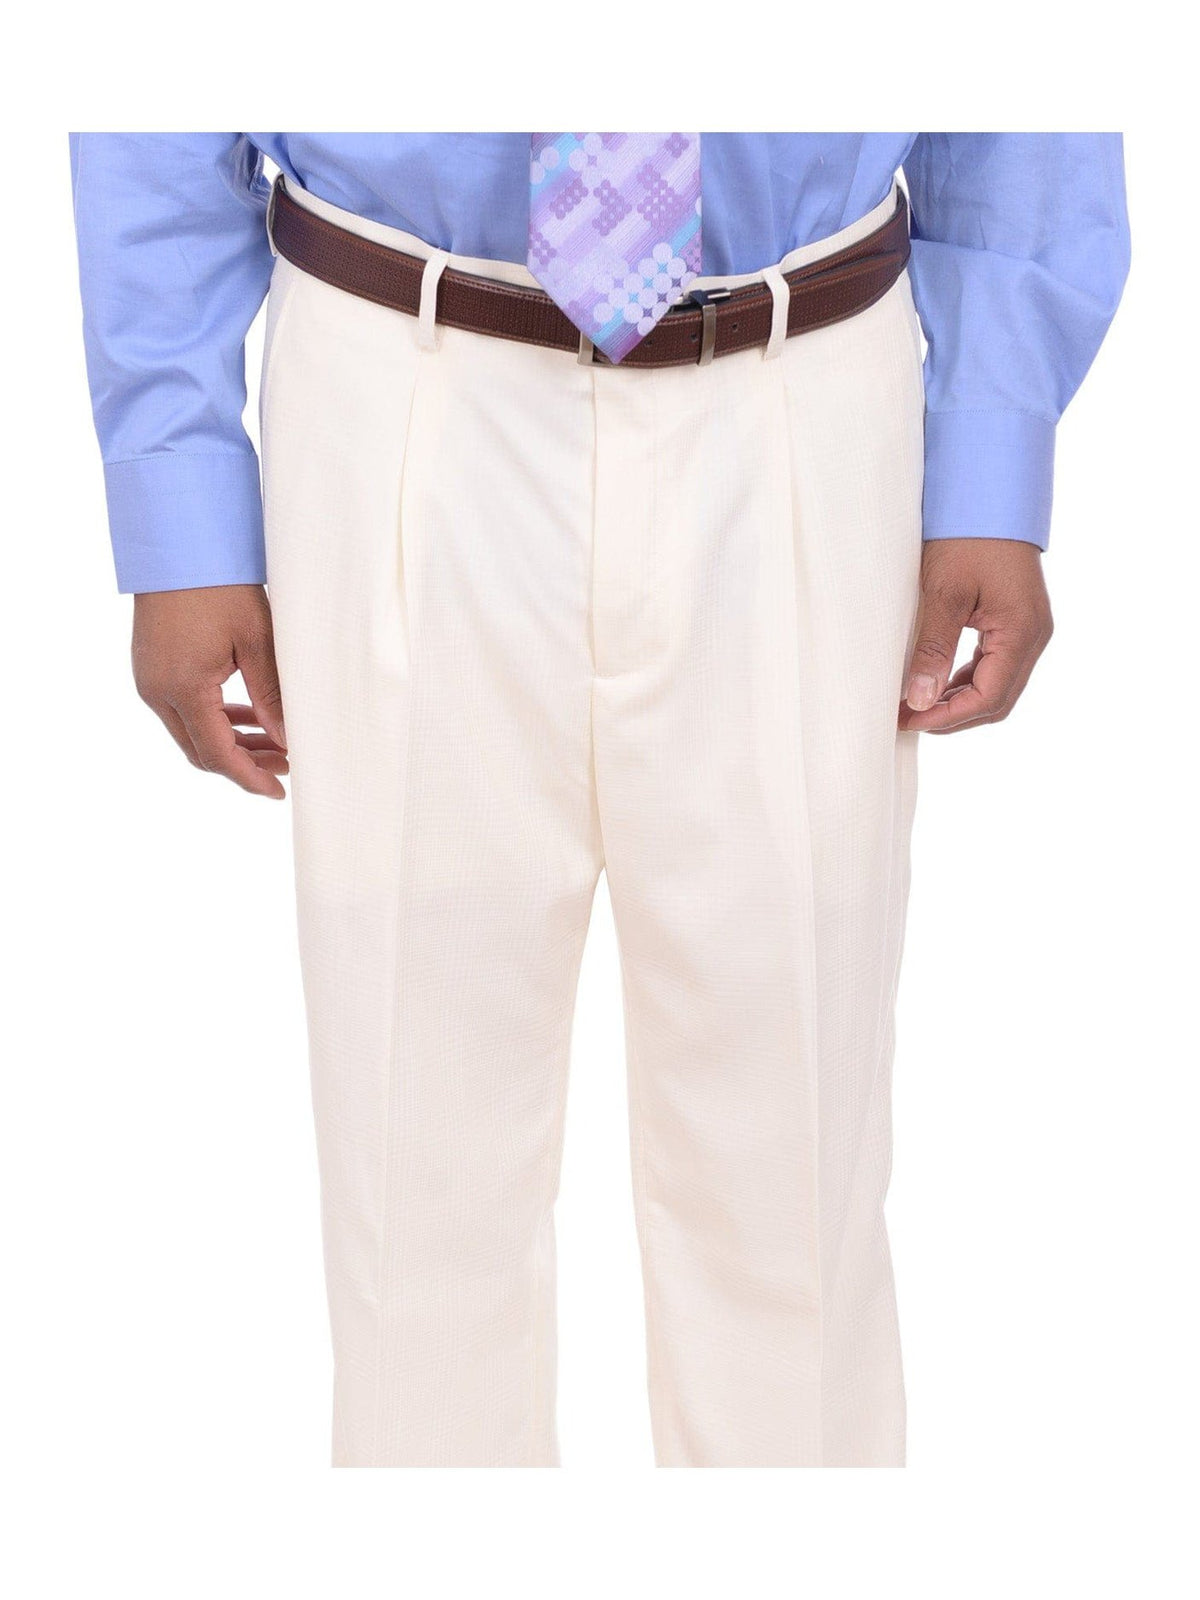 Steven Land Sale Suits Steven Land Cream Tonal Glen Plaid One Button Three Piece Suit With Peak Lapels